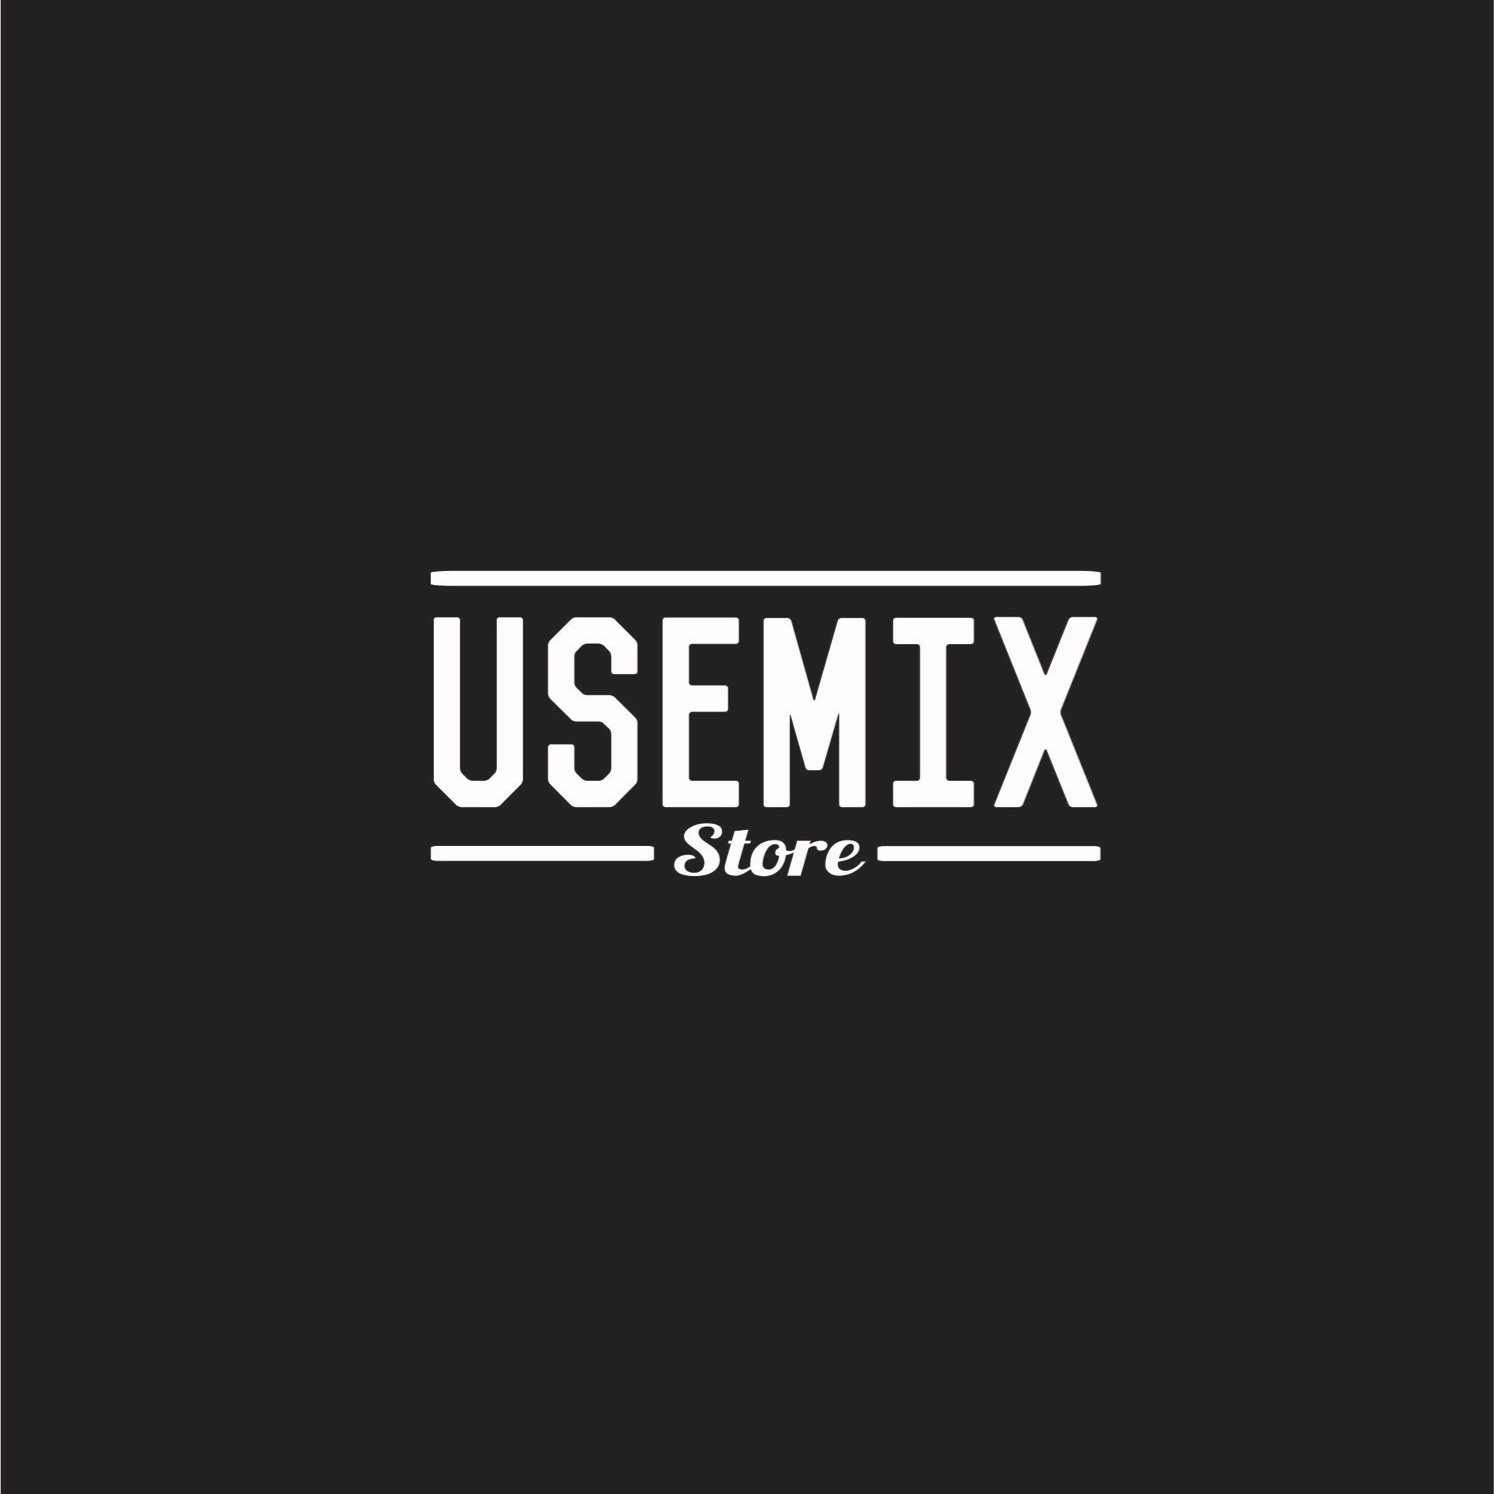 USEMIX Store